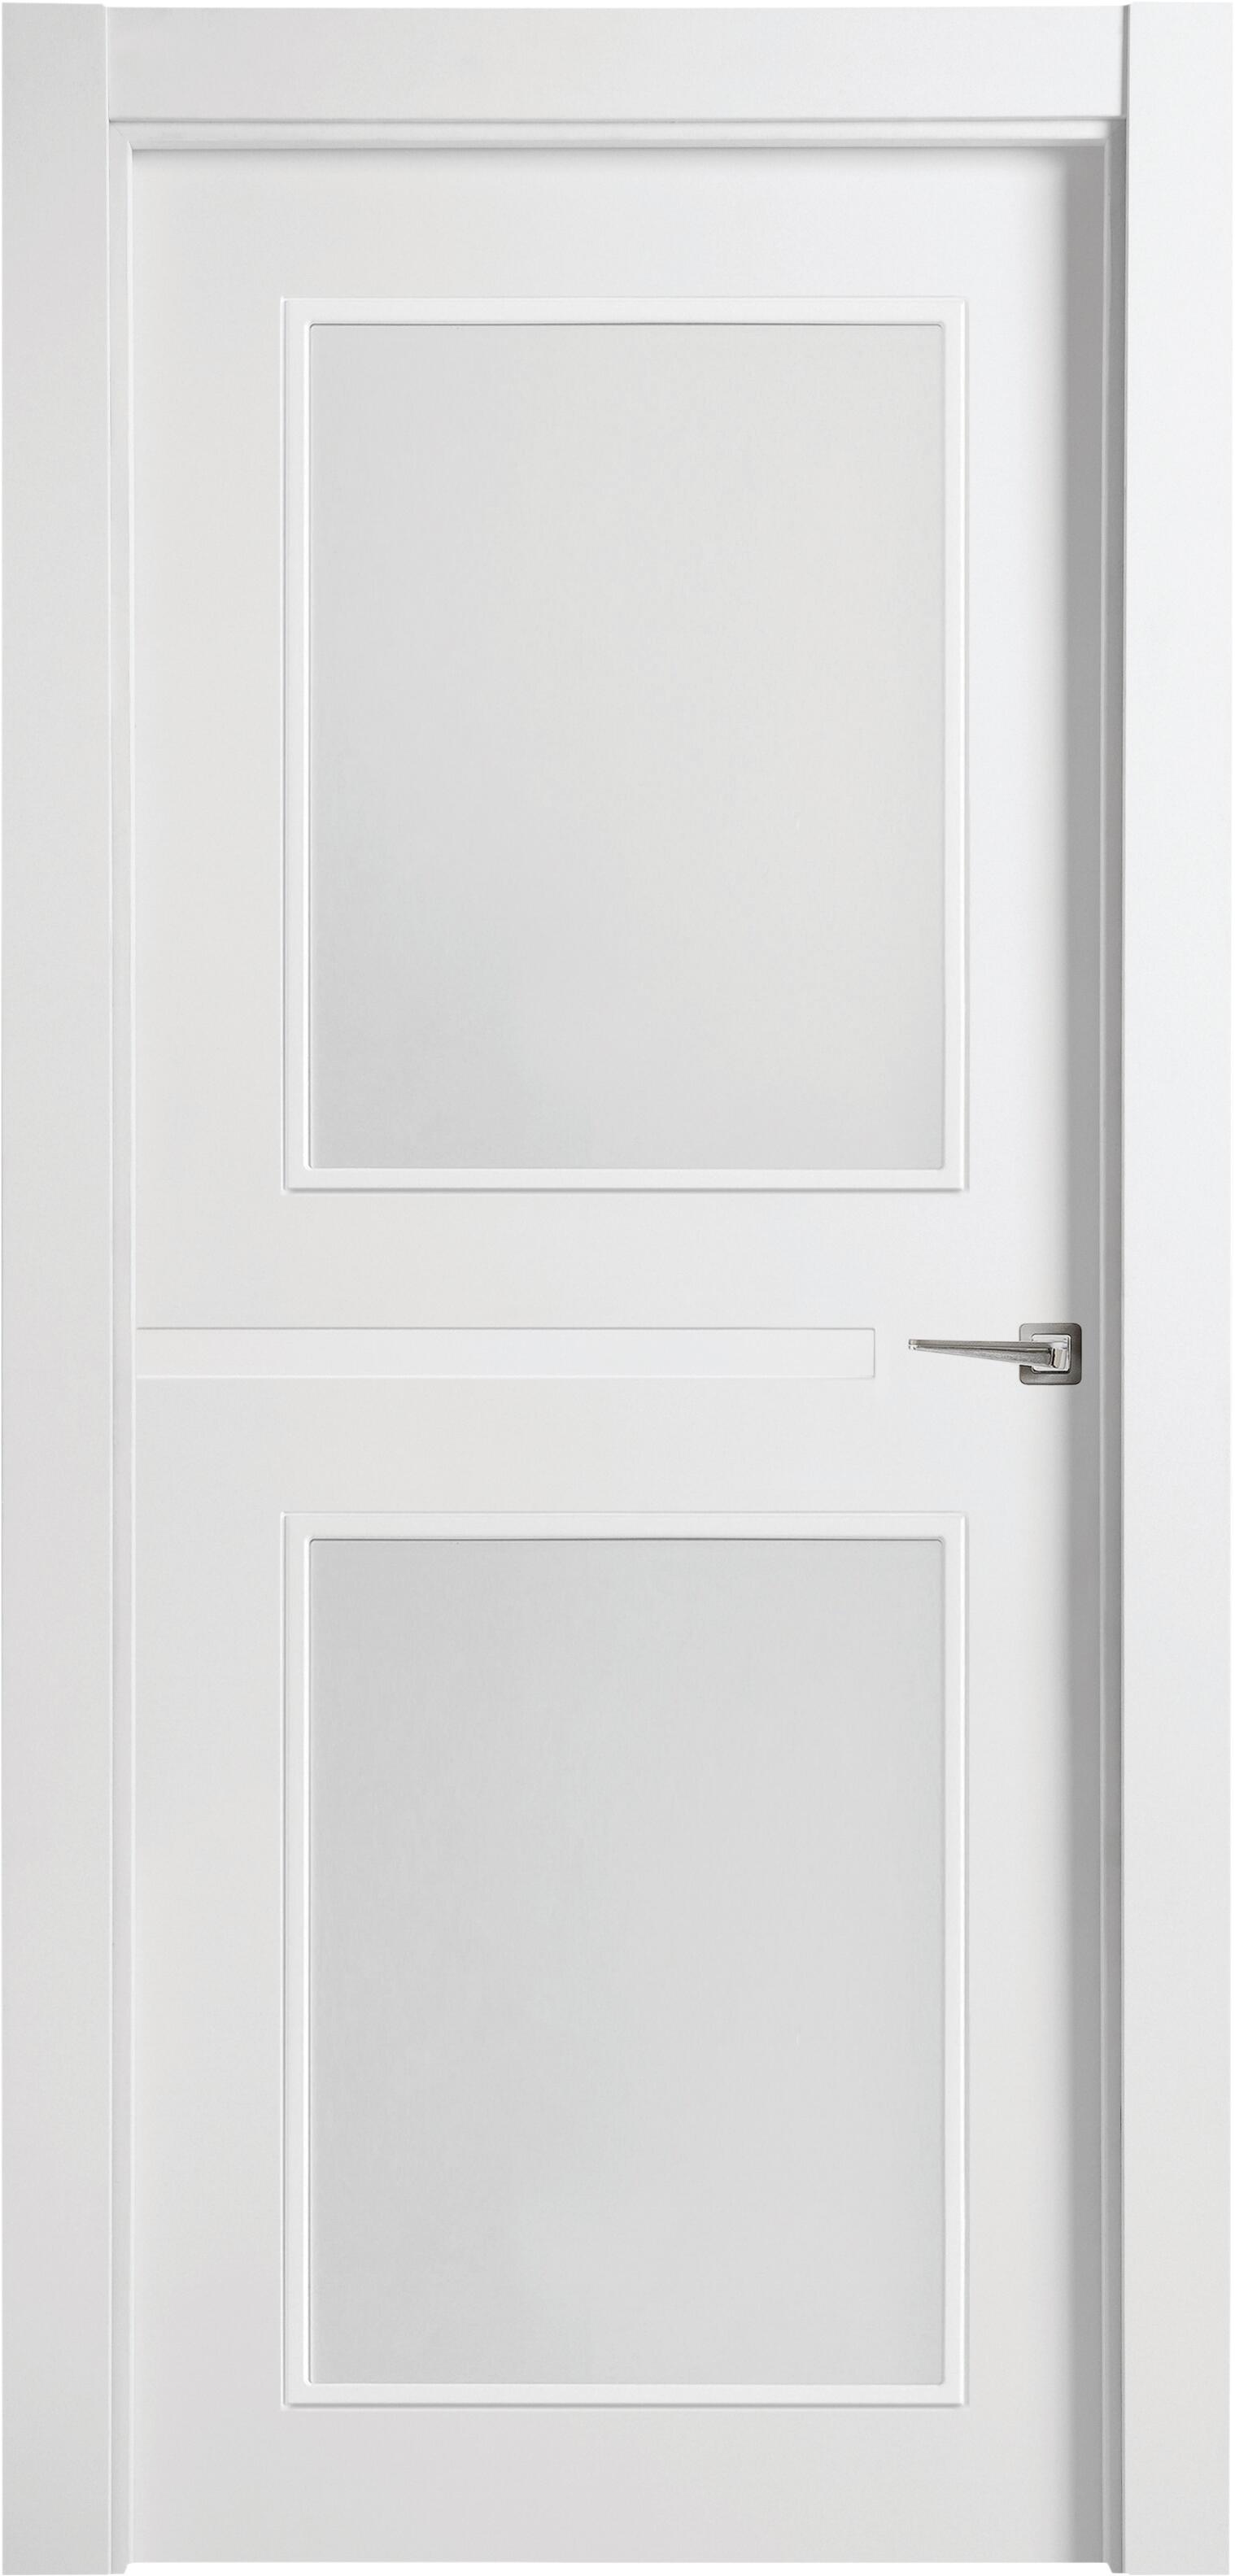 Puerta denver blanco apertura izquierda con cristal de 9x72,5cm